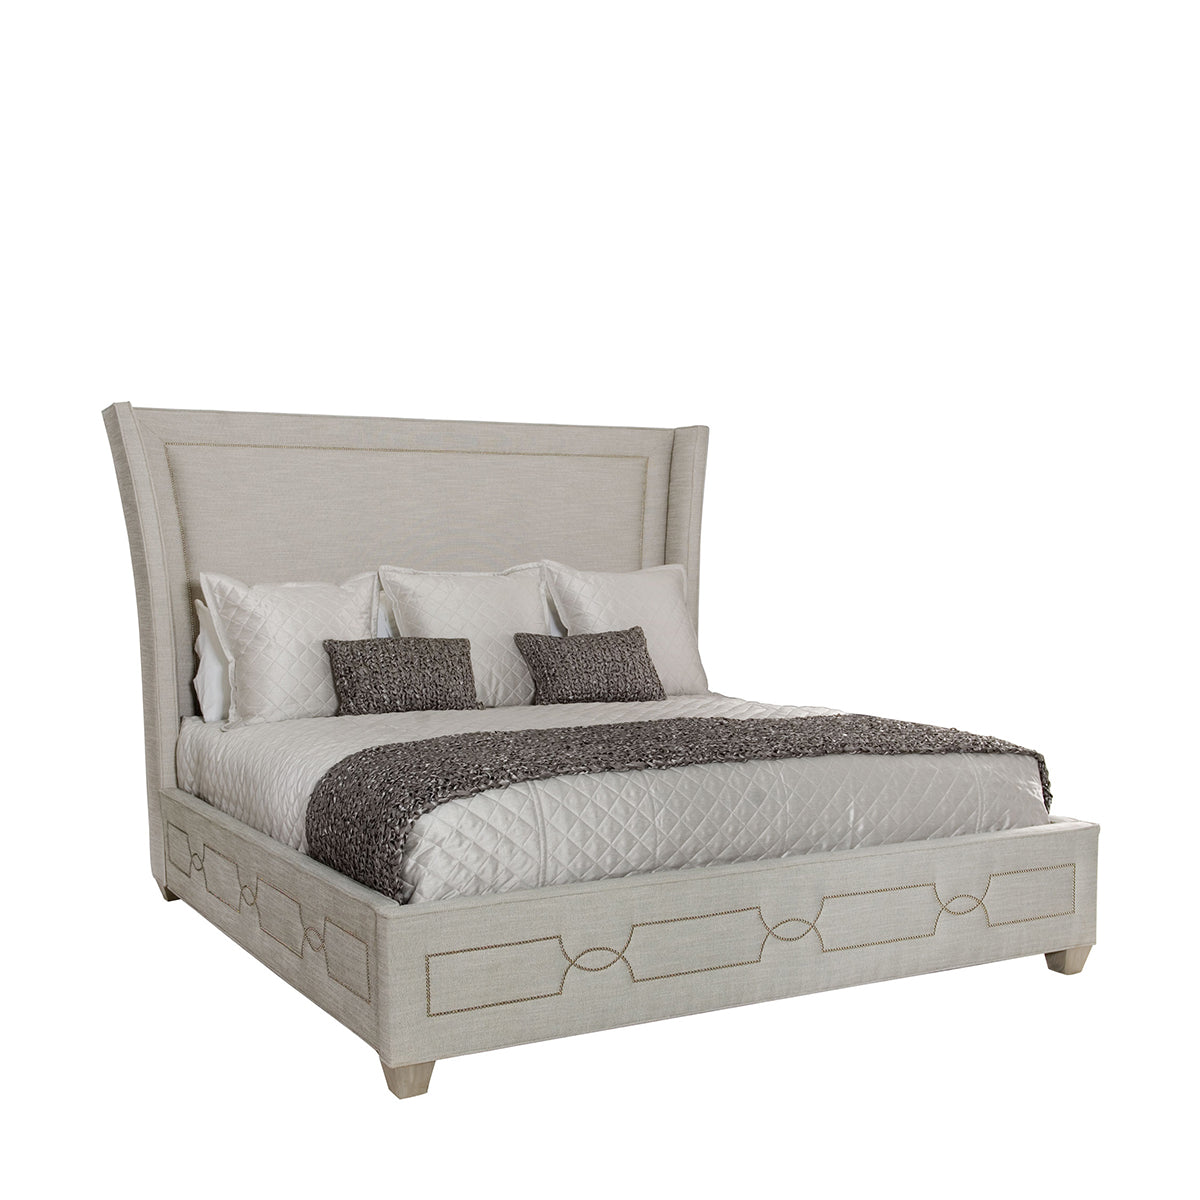 bernhardt criteria upholstered bed beds 